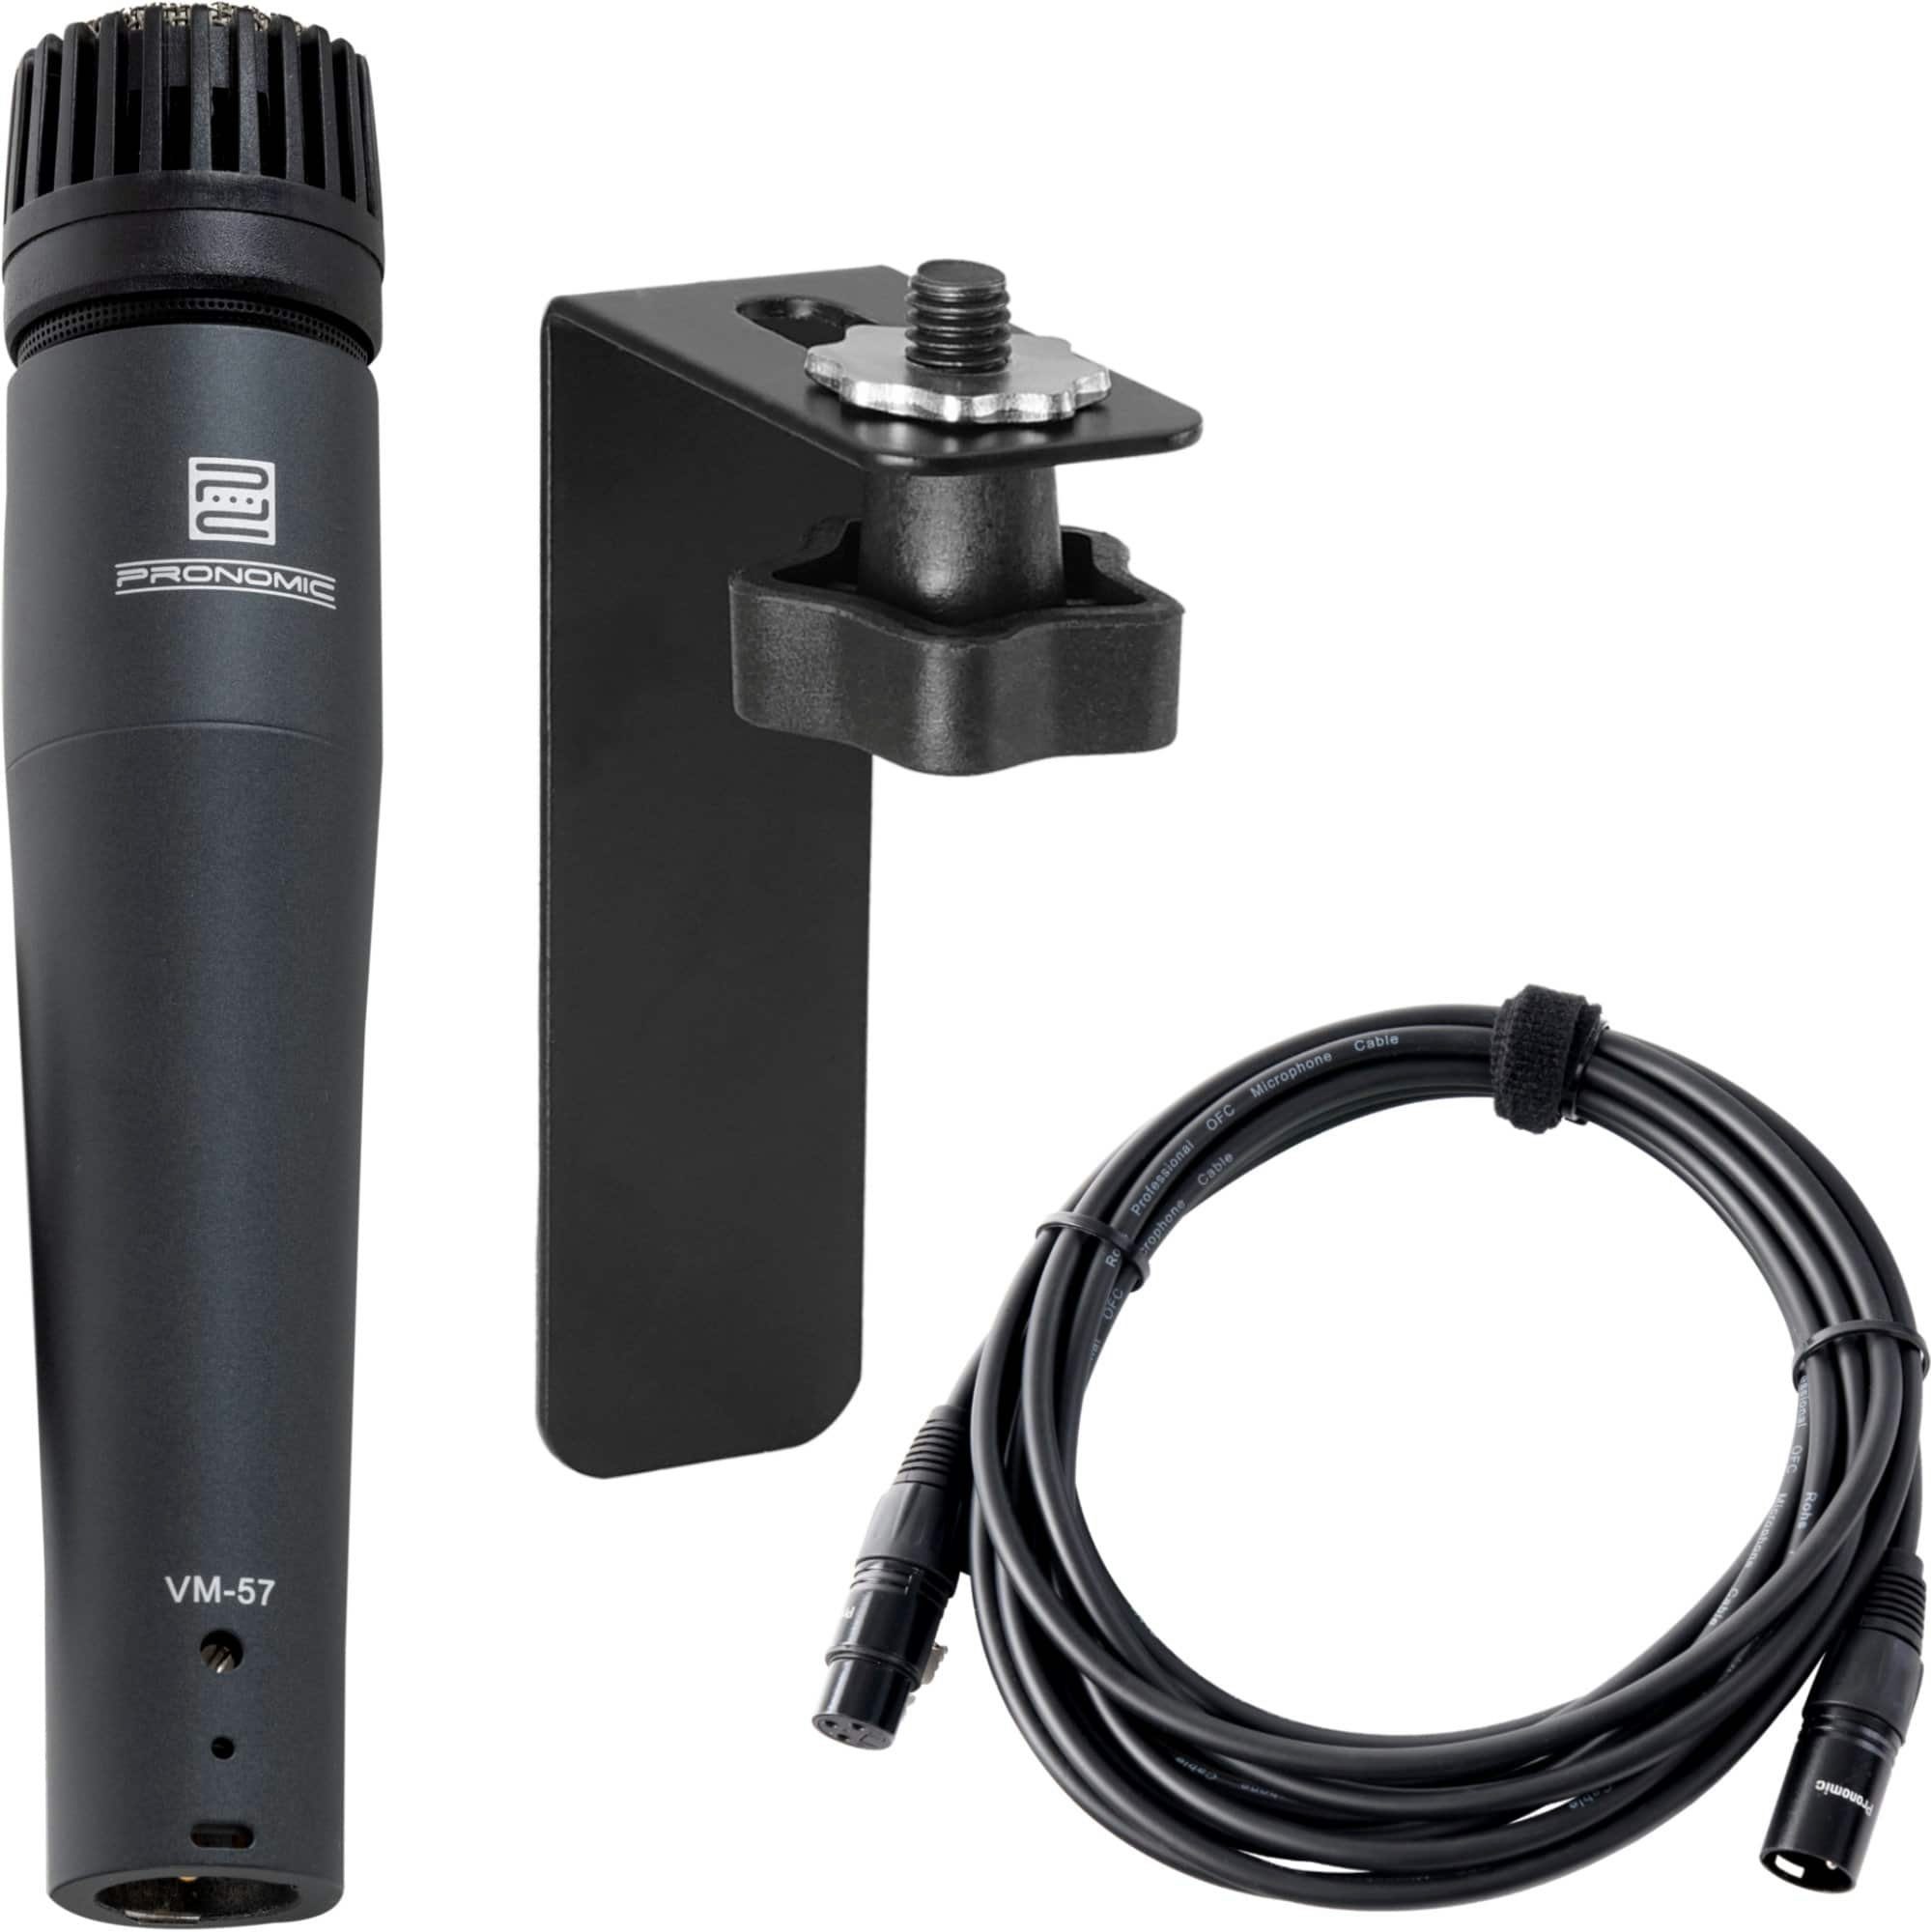 Pronomic Mikrofon VM-57 MkII Dynamisches Instrumenten-Mikrofon inkl. Stativadapter (Set inkl. Mikrofonhalterung für Cajon & Mikrofonkabel), besonders für hohe Schalldrücke geeignet